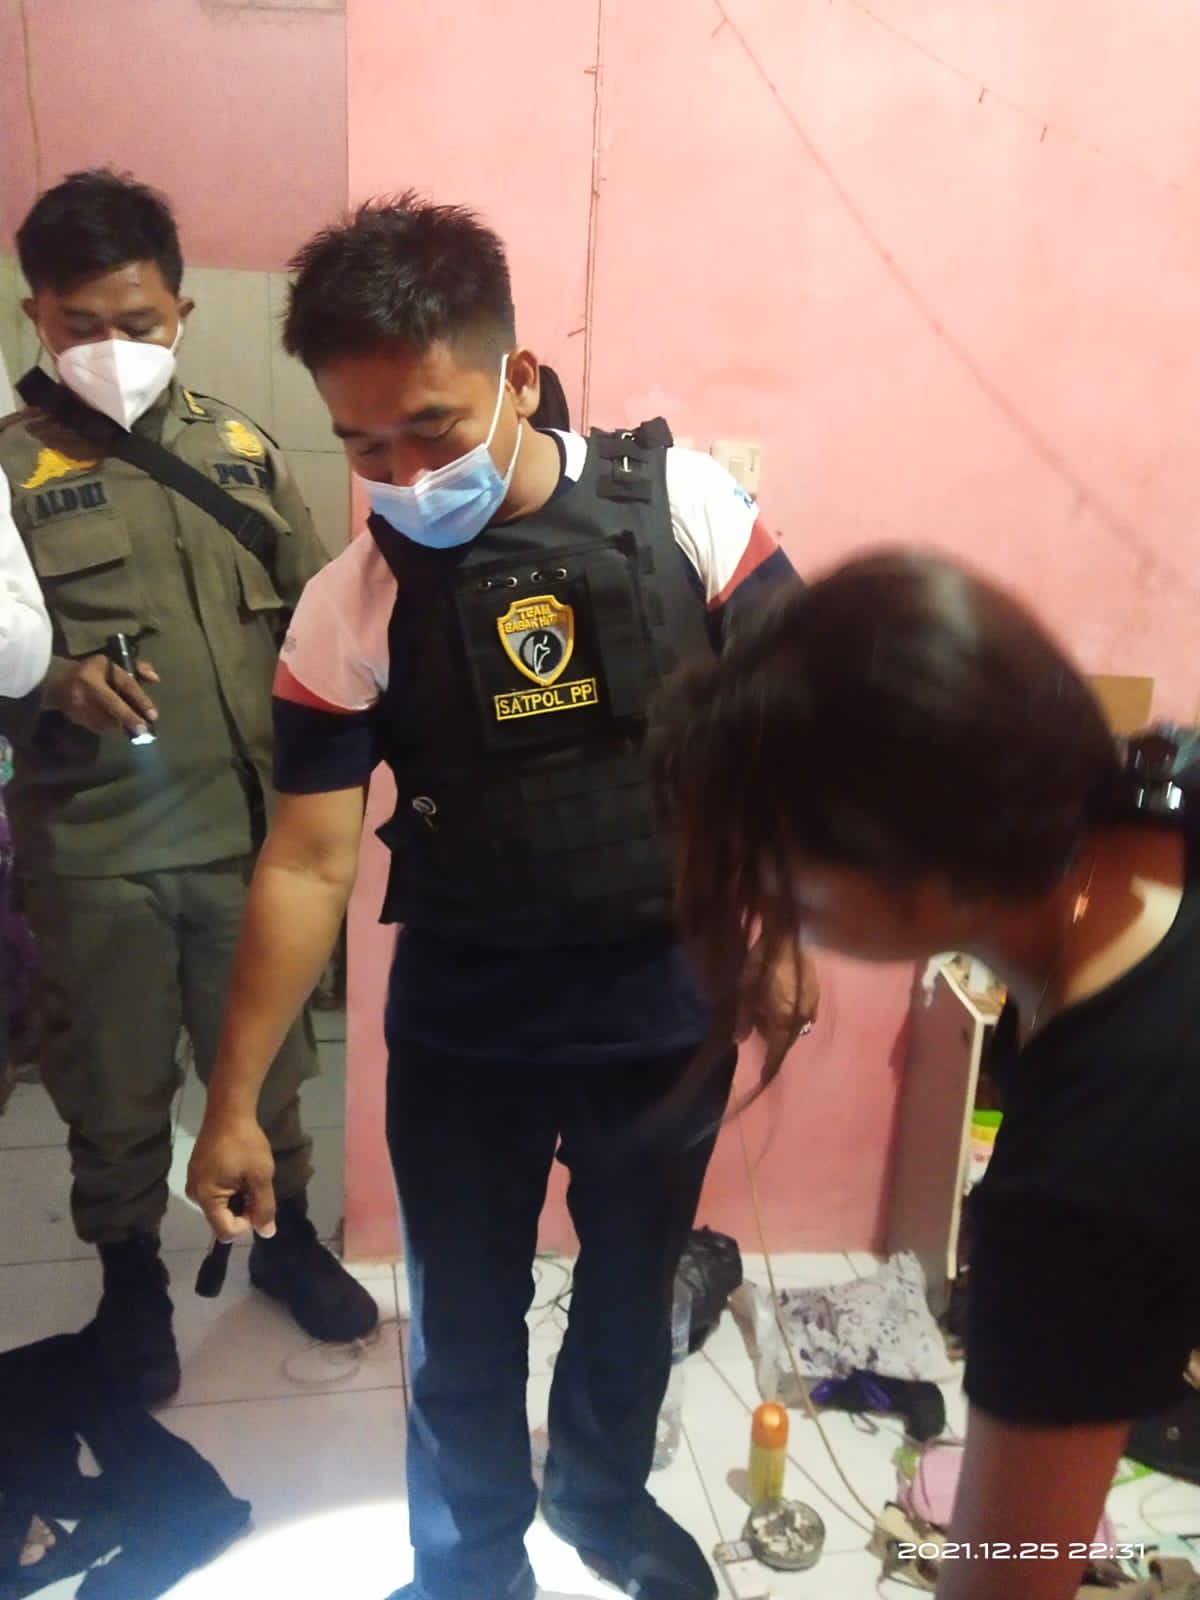 Satuan Polisi Pamong Praja (Satpol PP) Kota Tangerang Selatan kembali menggerebek salah satu indekos yang berlokasi di wilayah Lengkong Wetan, Serpong, Tangerang Selatan, Sabtu, 25 Desember 2021 malam.